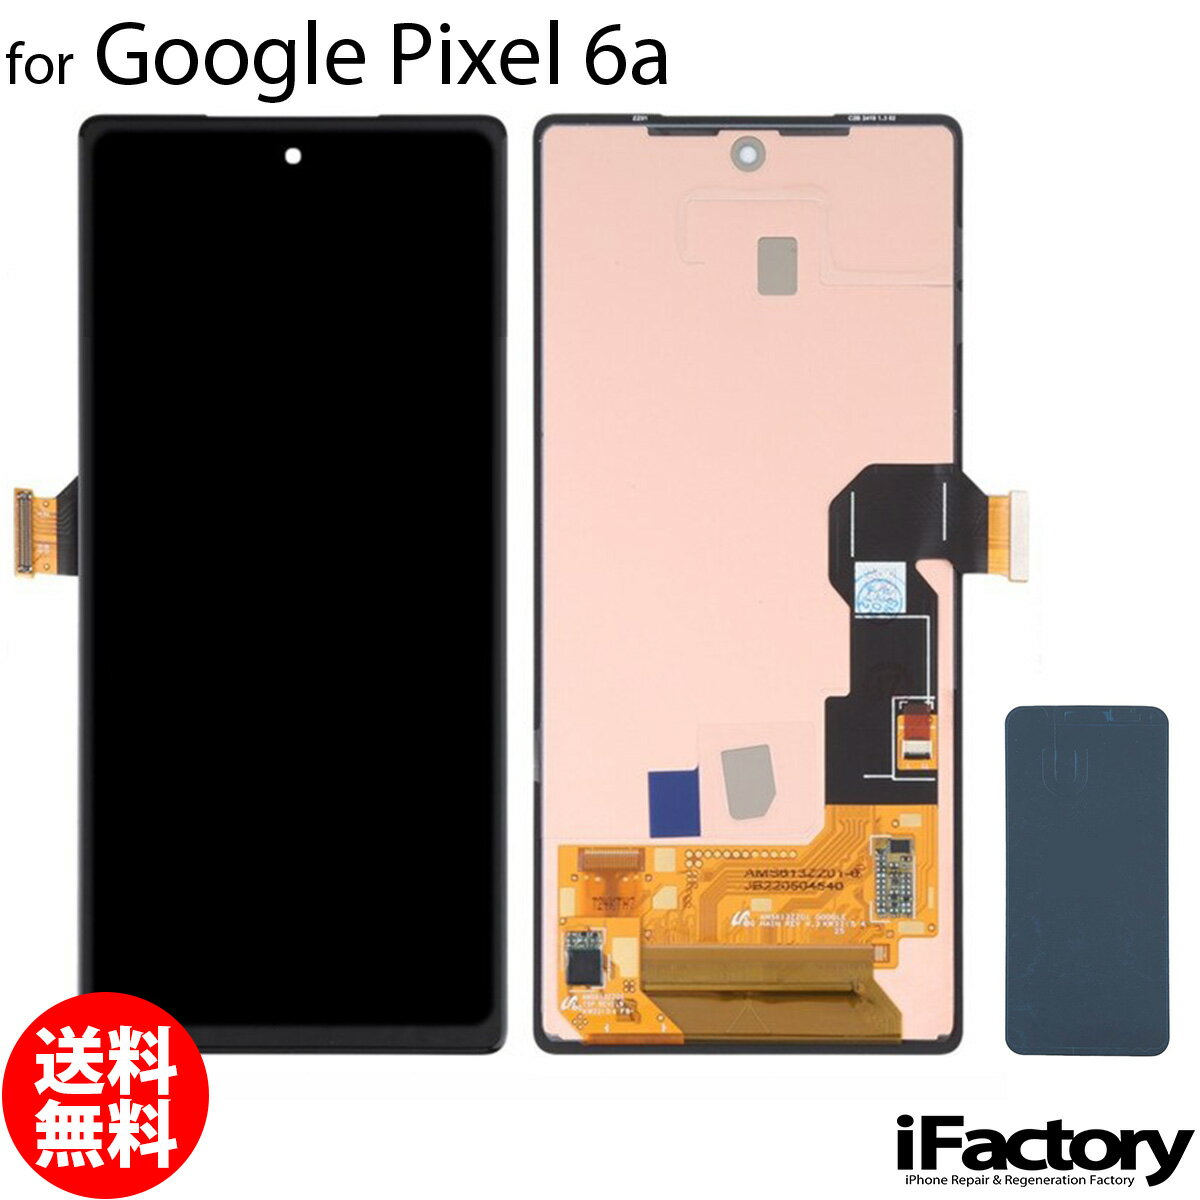 Google Pixel 6a 互換 液晶パネル タッチパネル OLED